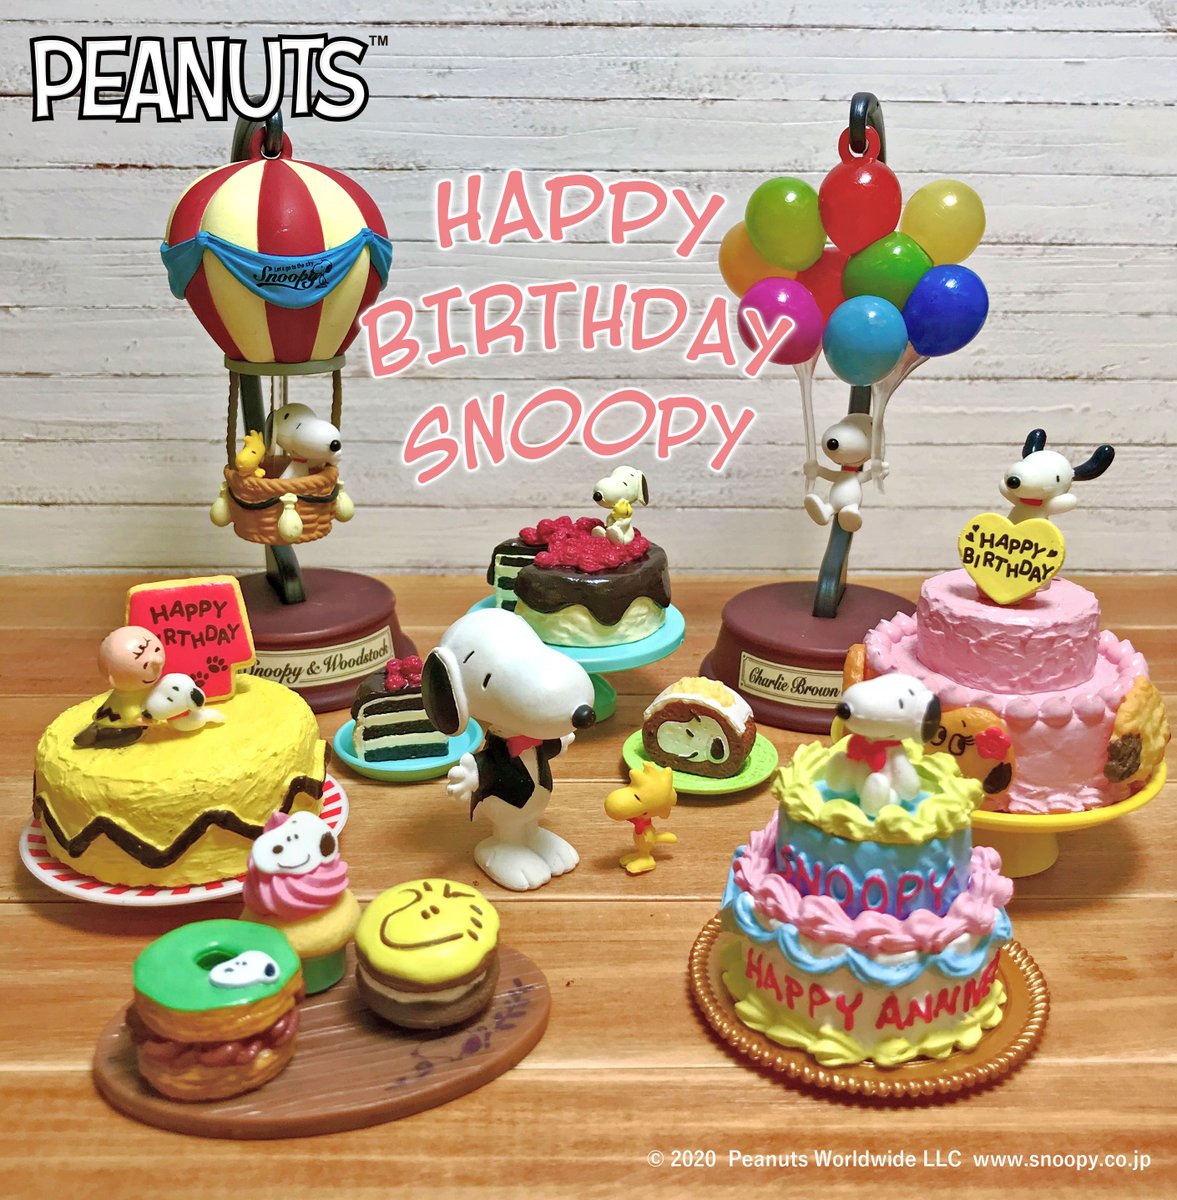 Uzivatel 株式会社リーメント公式 Na Twitteru Happy Birthday Snoopy 今日は大好きなスヌーピーの誕生日 たくさんのスイーツを用意してみんなでお祝いしましょ スヌーピー ピーナッツ Hbdスヌーピー Snoopy Peanuts Hbdsnoopy リーメント Rement